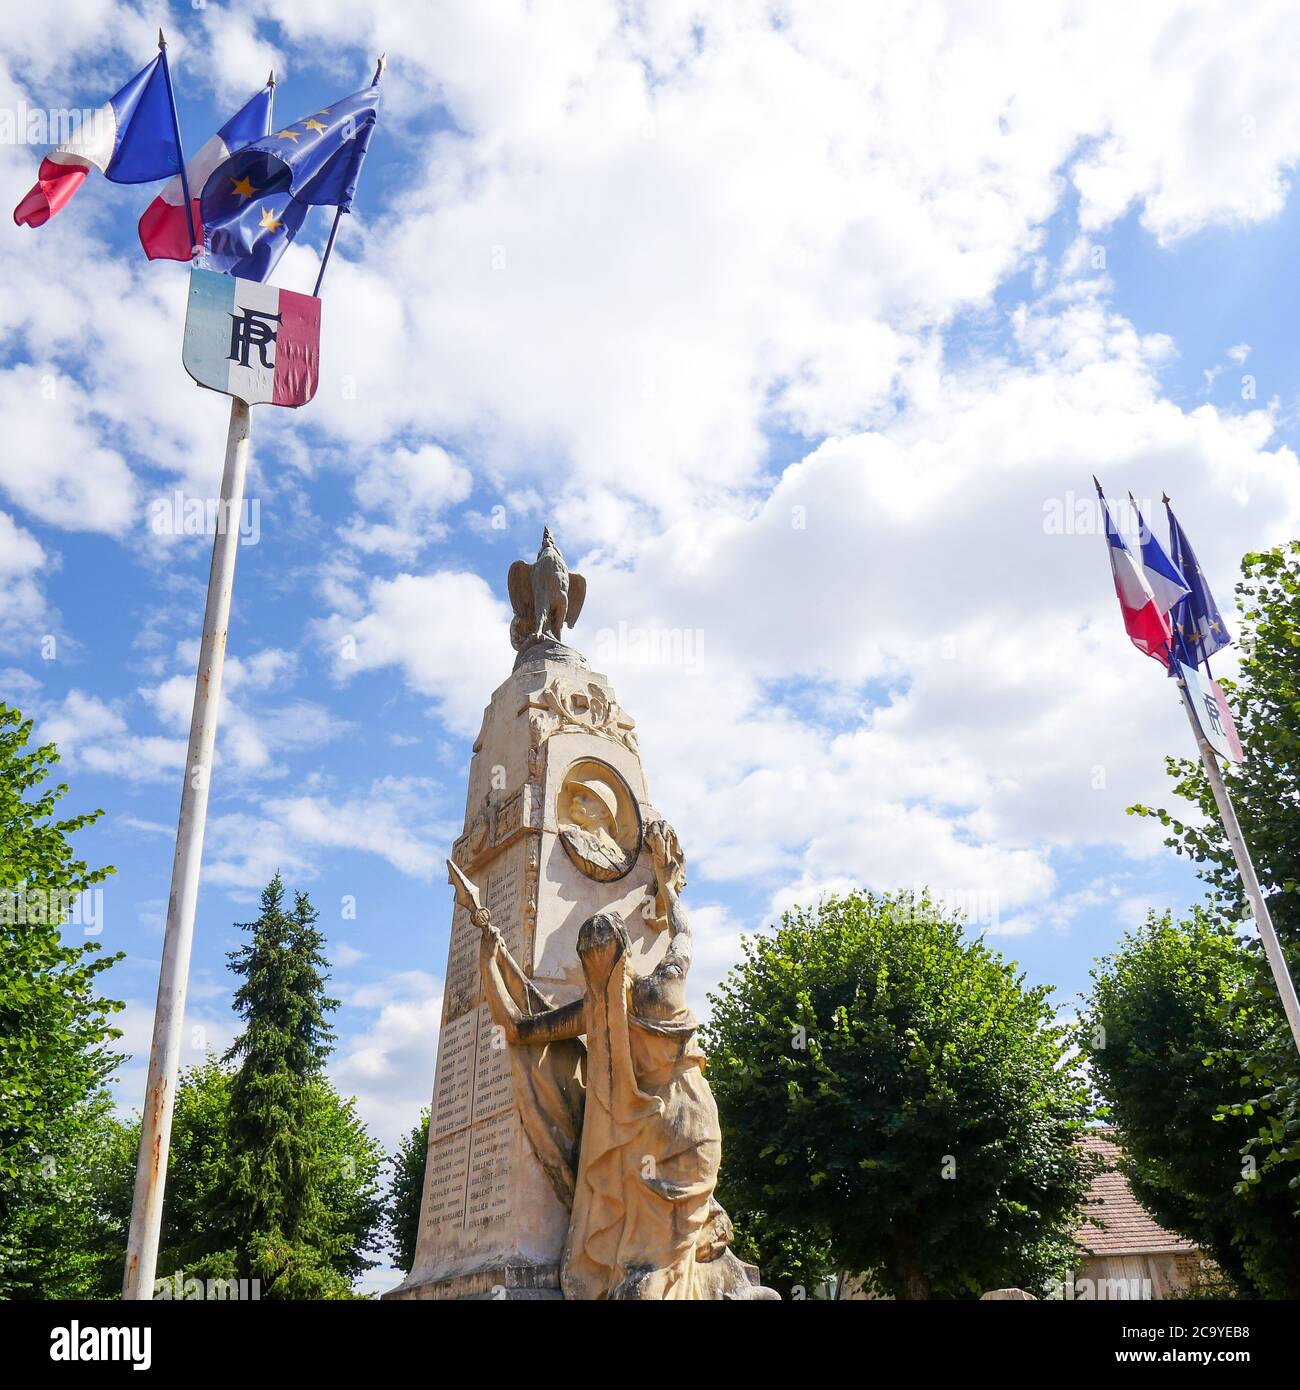 Monumento militare, Corbigny, Nièvre, Borgogna Franche-Comté Regione, Francia Foto Stock